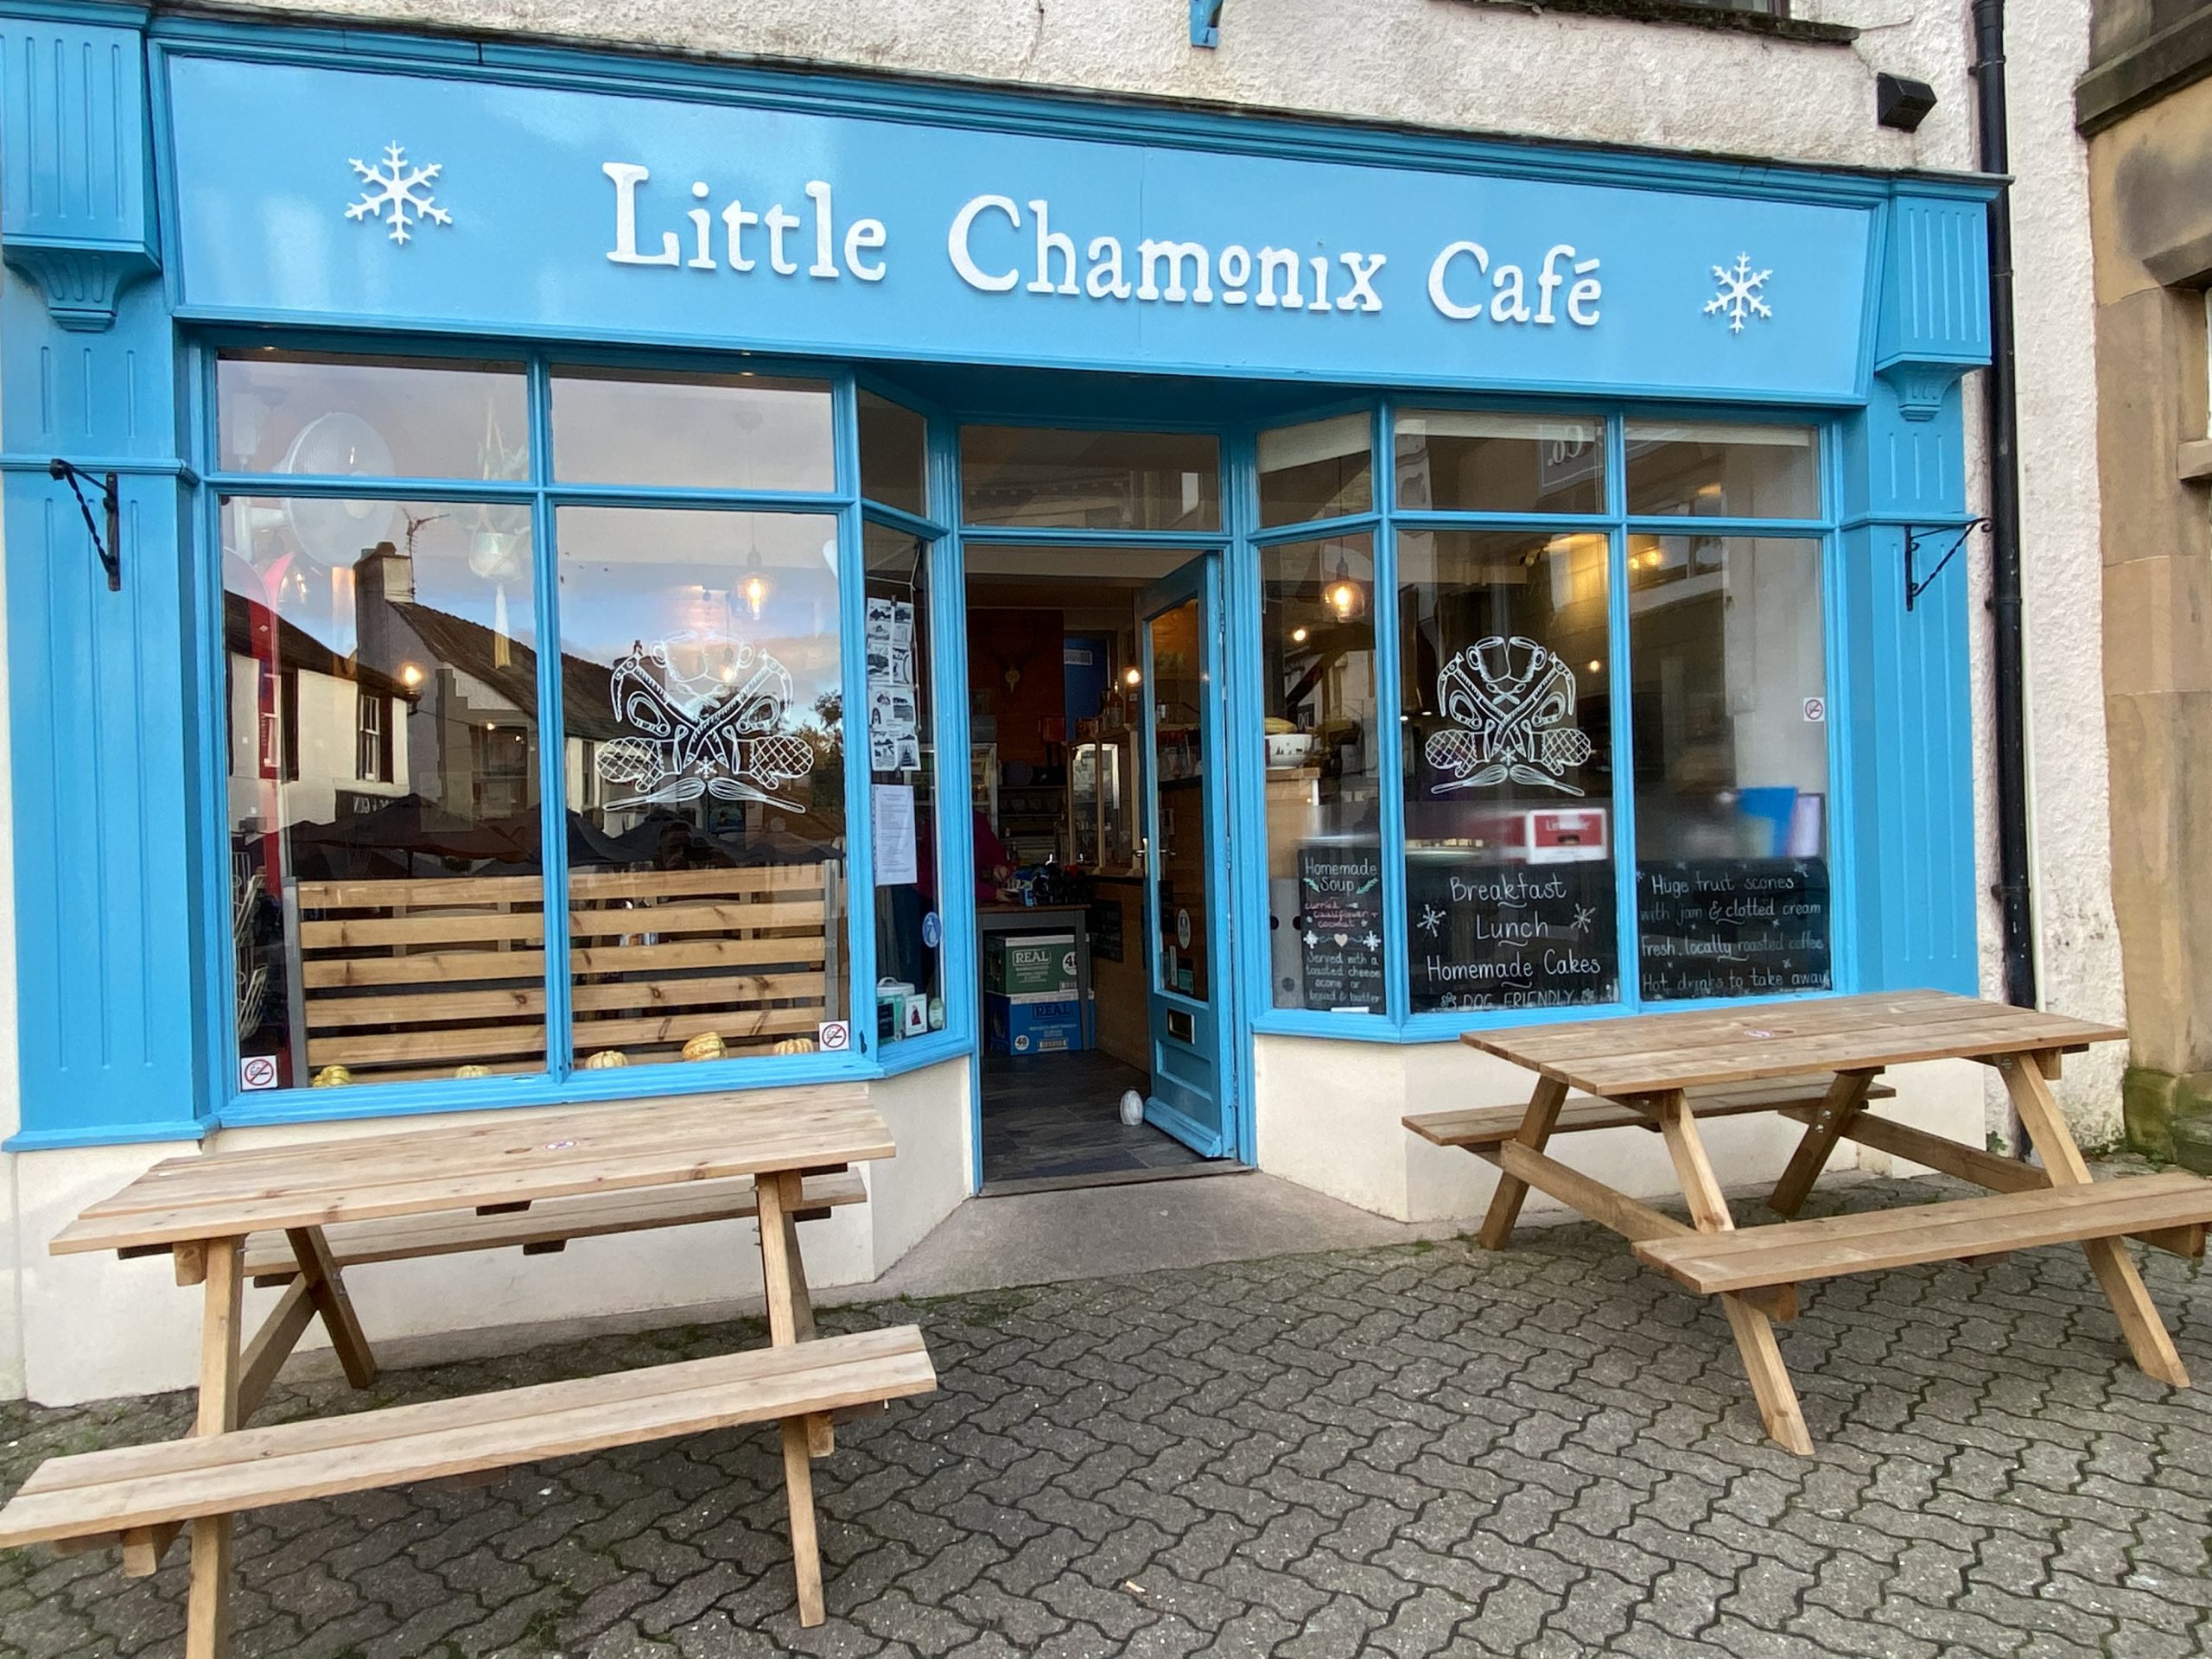 Little Chamonix Cafe Under New Ownership